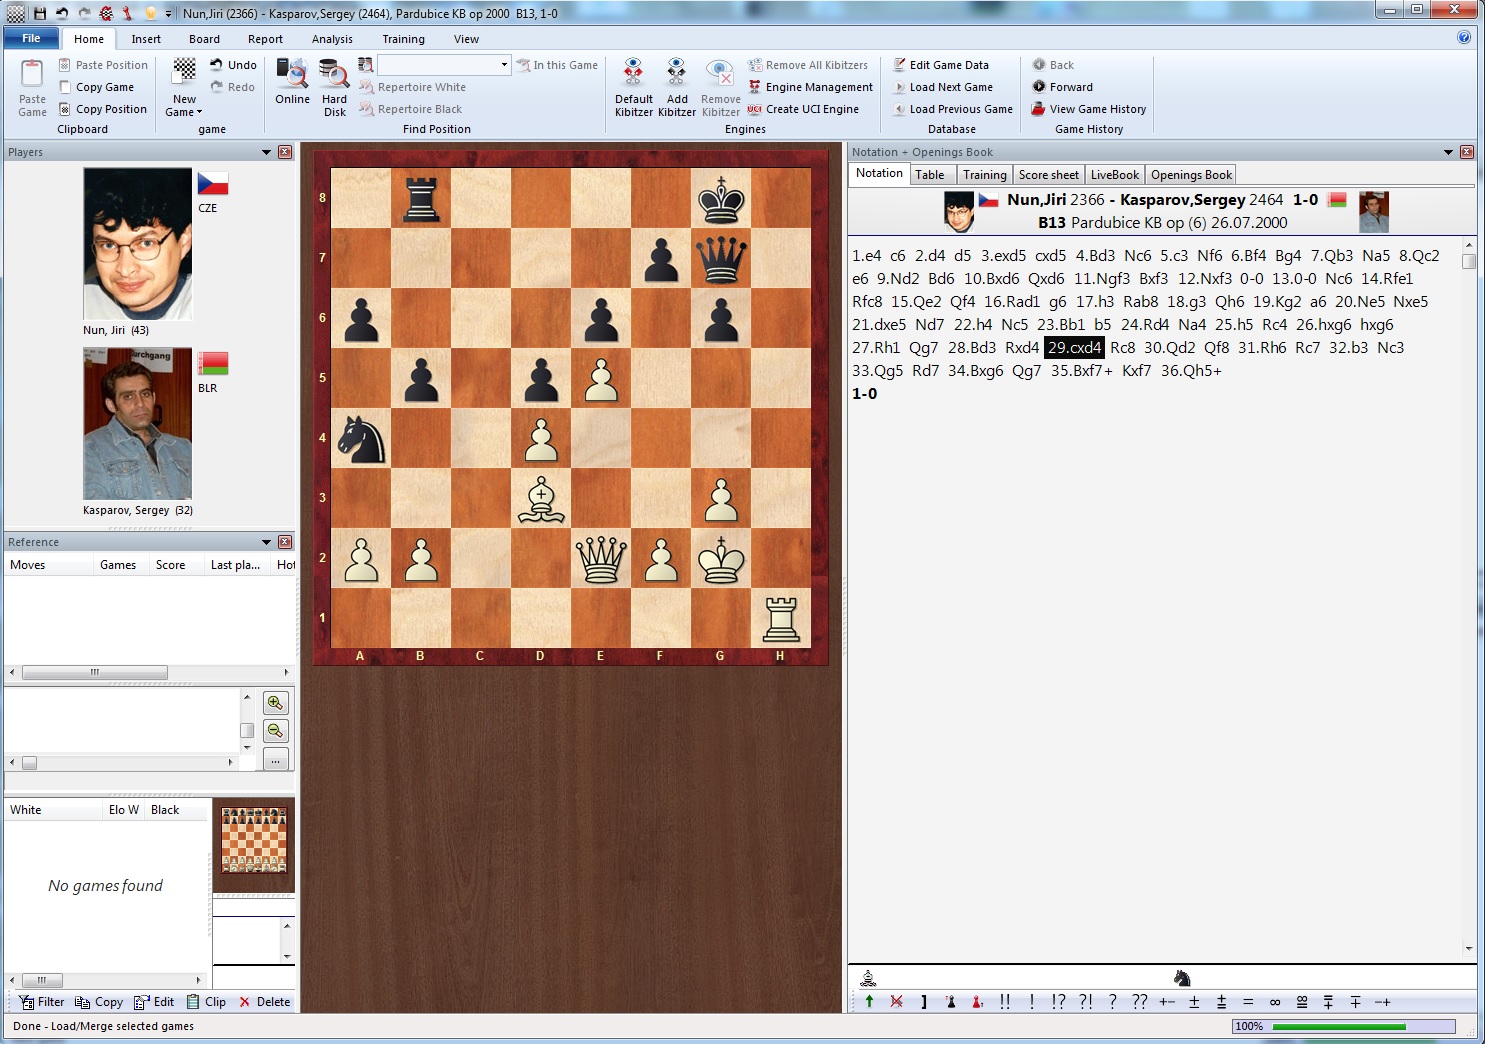 ChessBase 13 Pro on Steam